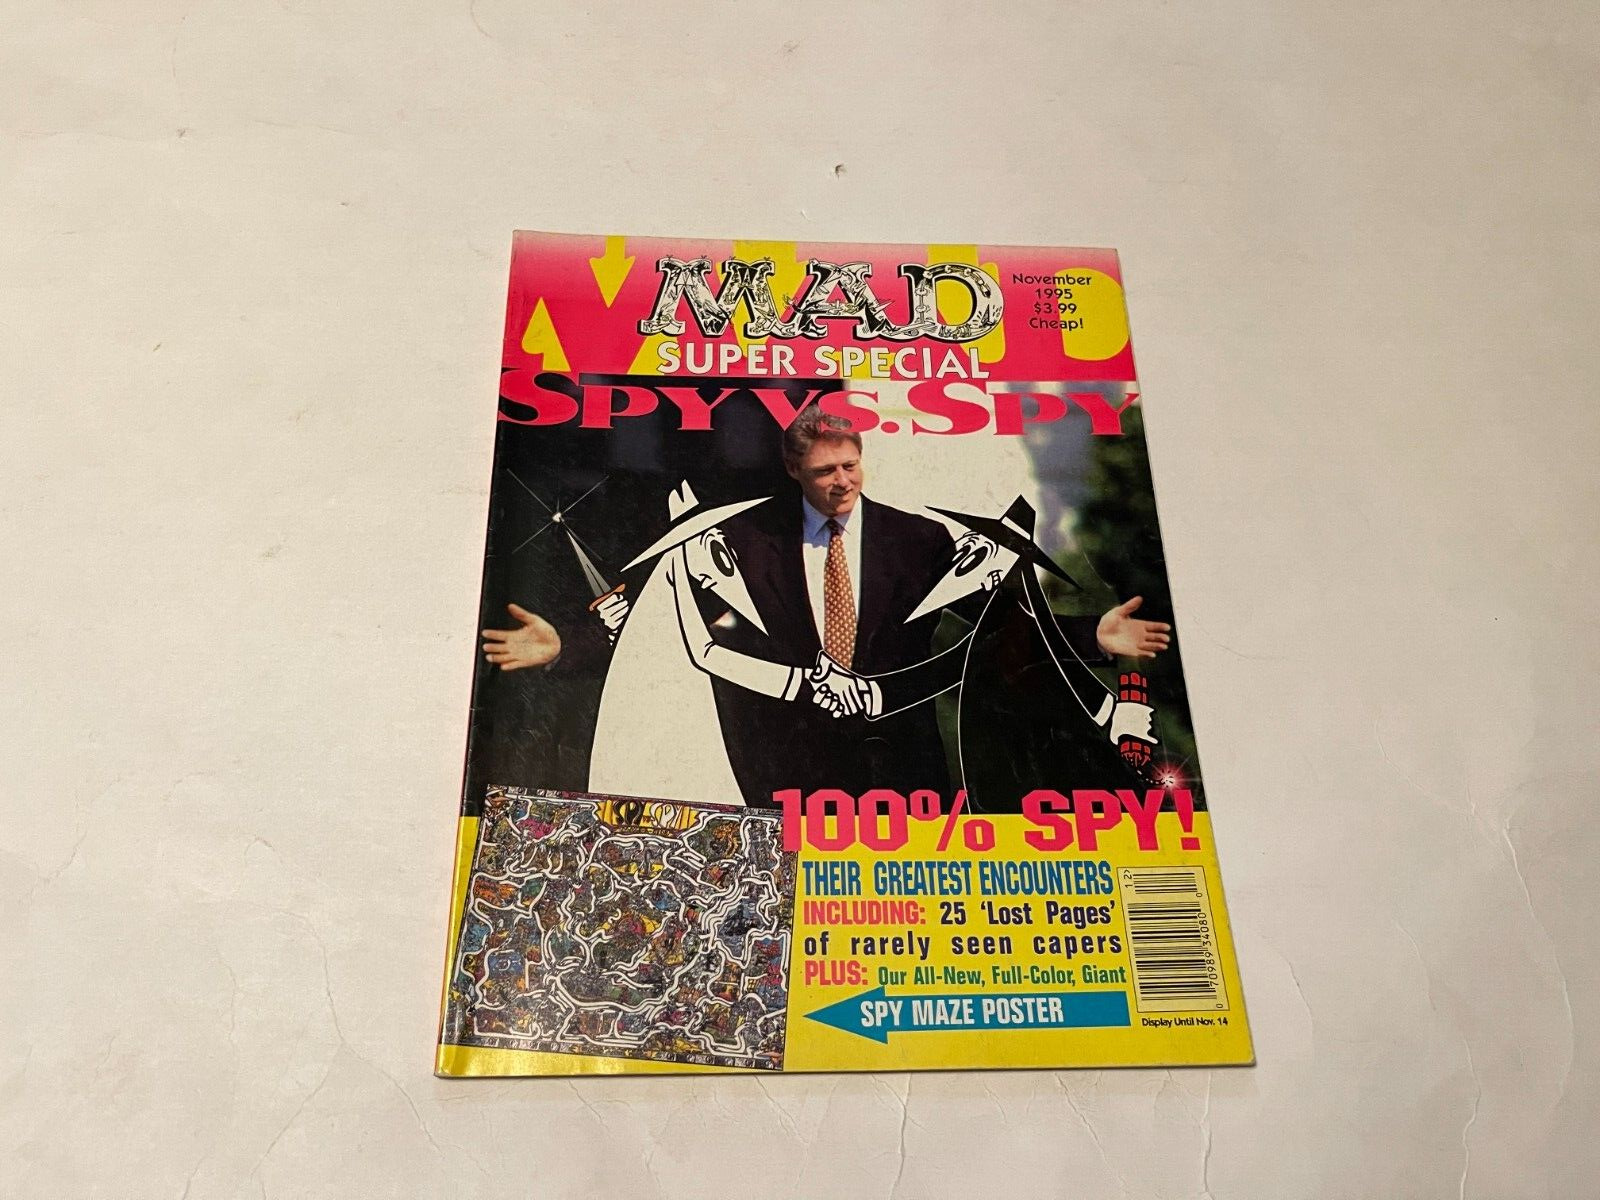 1995 NOVEMBER MAD MAGAZINE SUPER SPECIAL *SPY VS. SPY* FREE S&H (AM) 9821